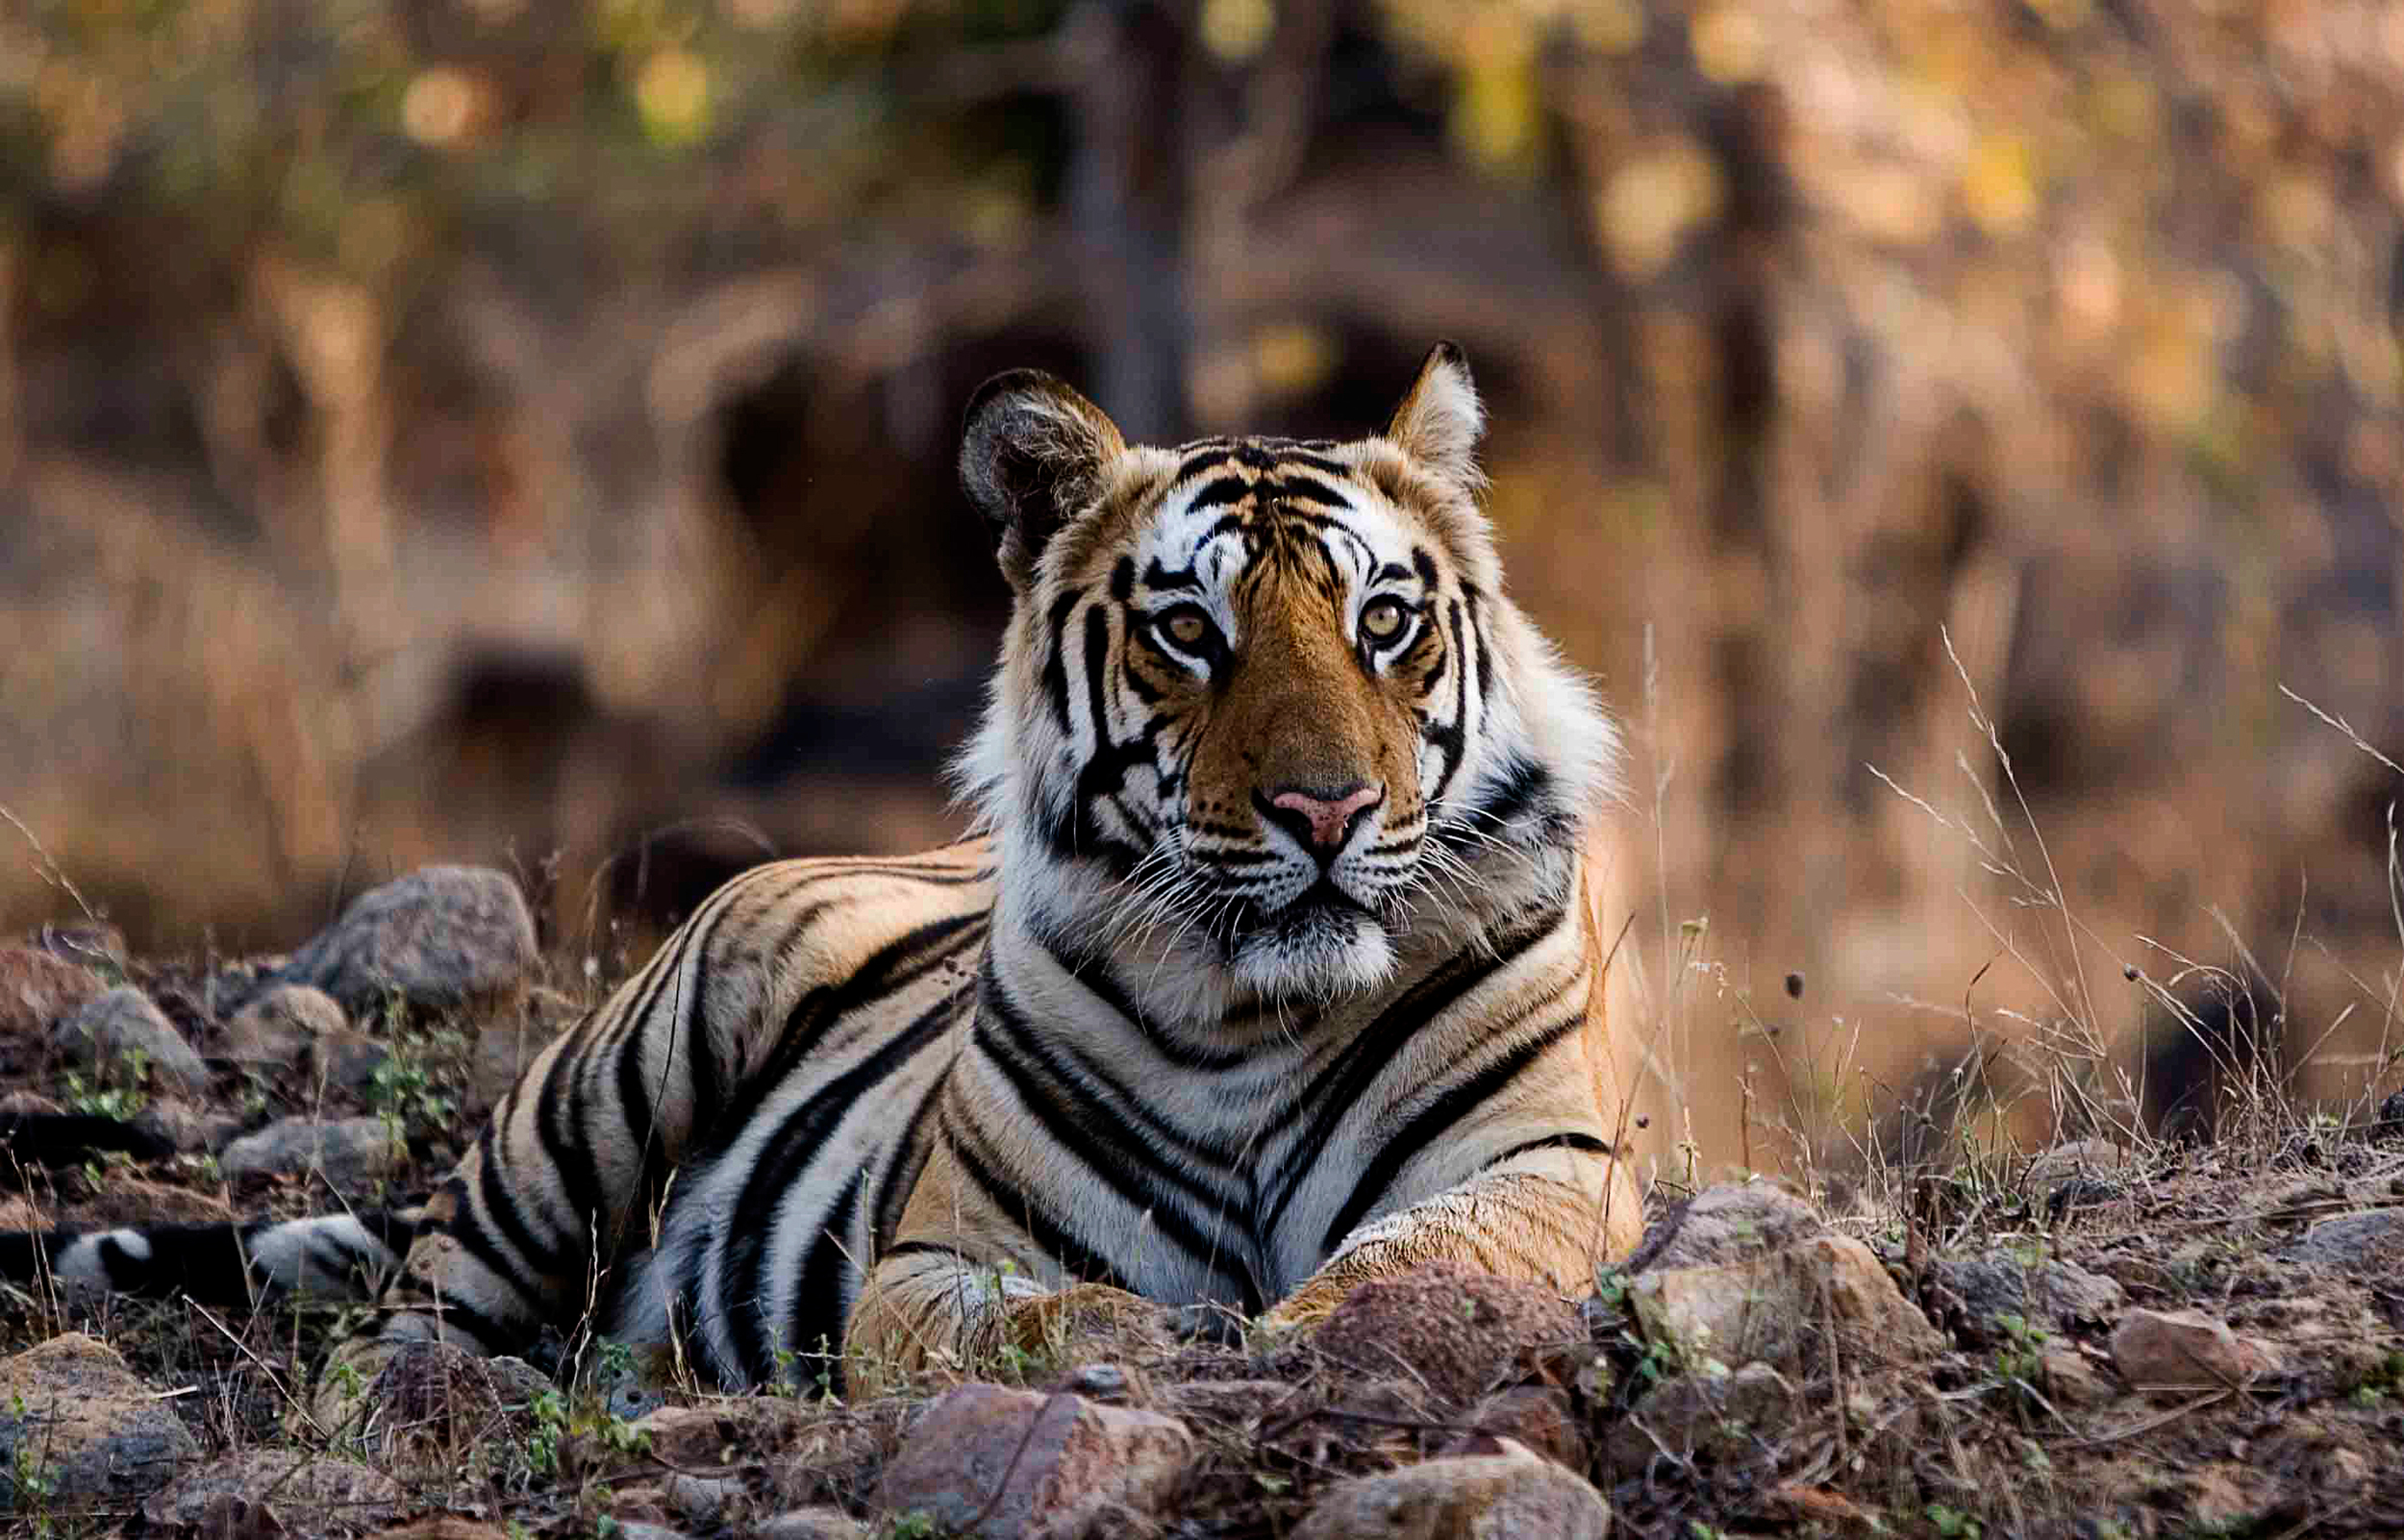 Tiger-Male-morning-Bandhavgarh-2007.jpg